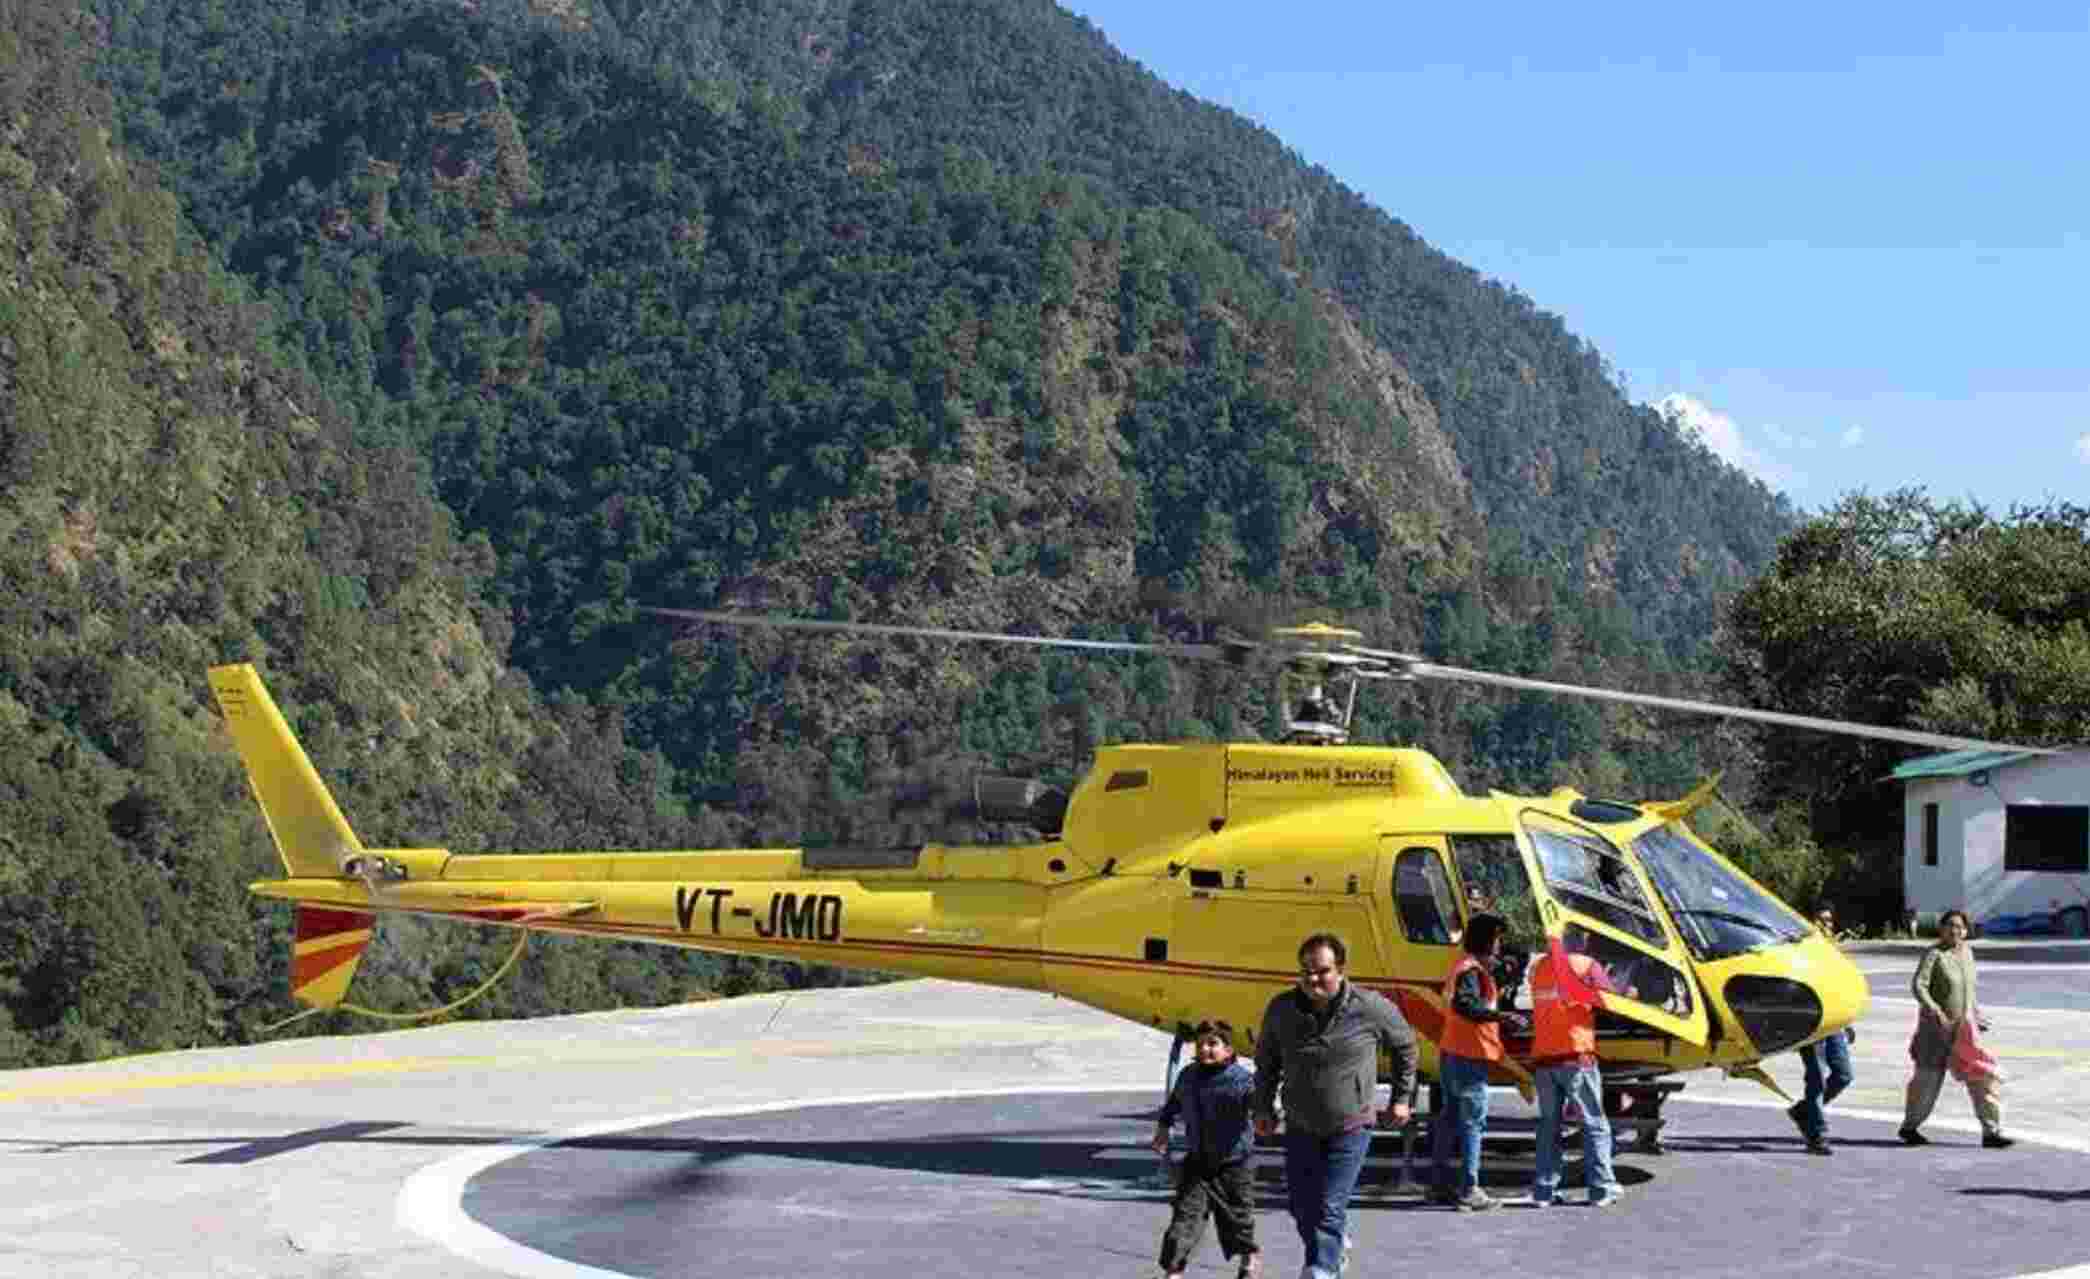 Kedarnath Helicopter Crash : केदारनाथ हादसे के बाद हैली सेवाओं पर तत्काल लगी रोक, केदारनाथ में हेलीकॉप्टर क्रेश होने के बाद लिया गया फैसला